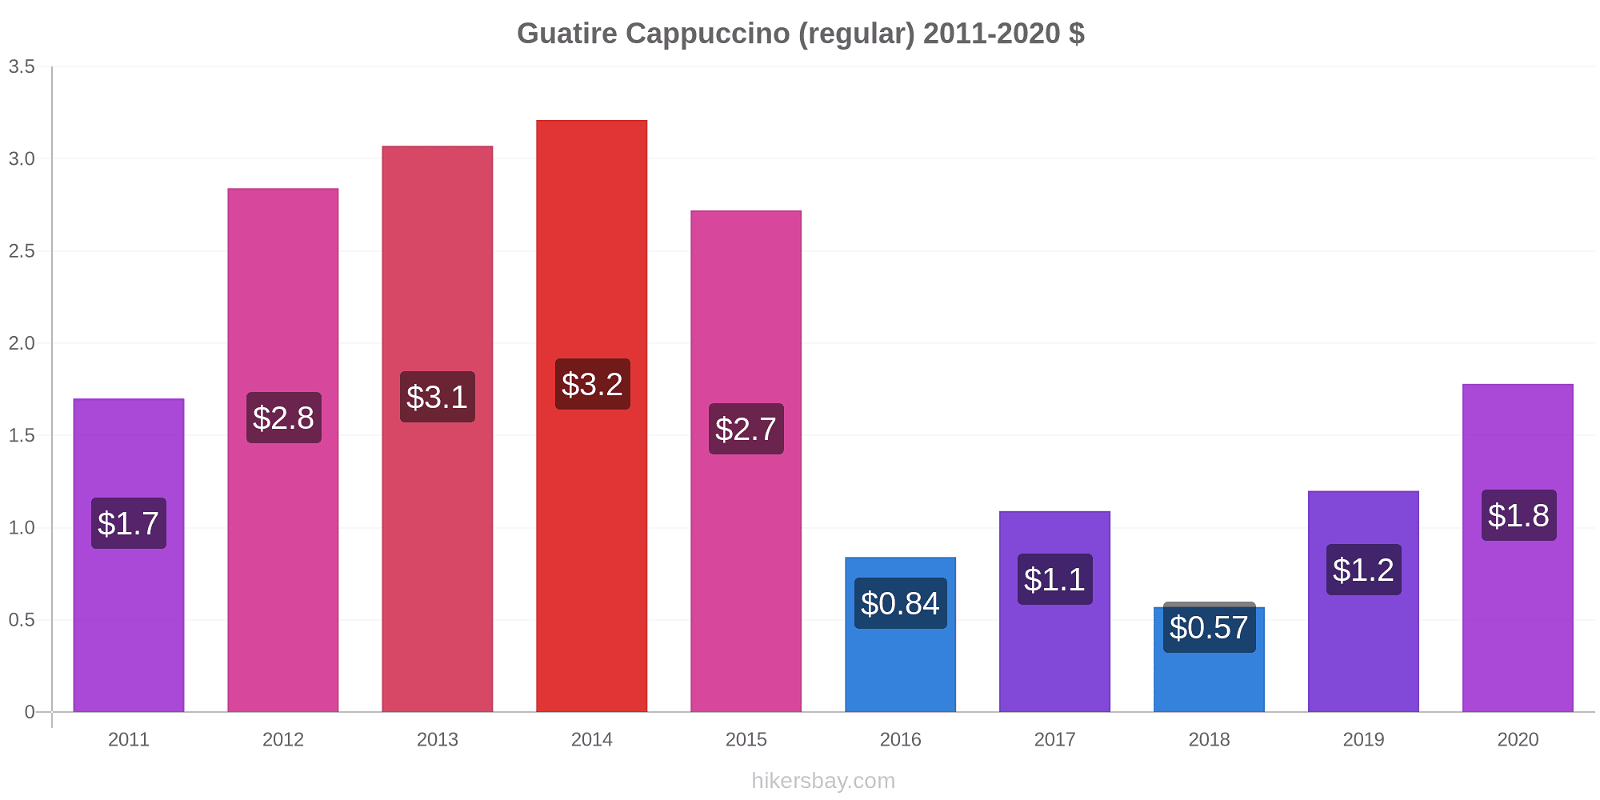 Guatire price changes Cappuccino (regular) hikersbay.com